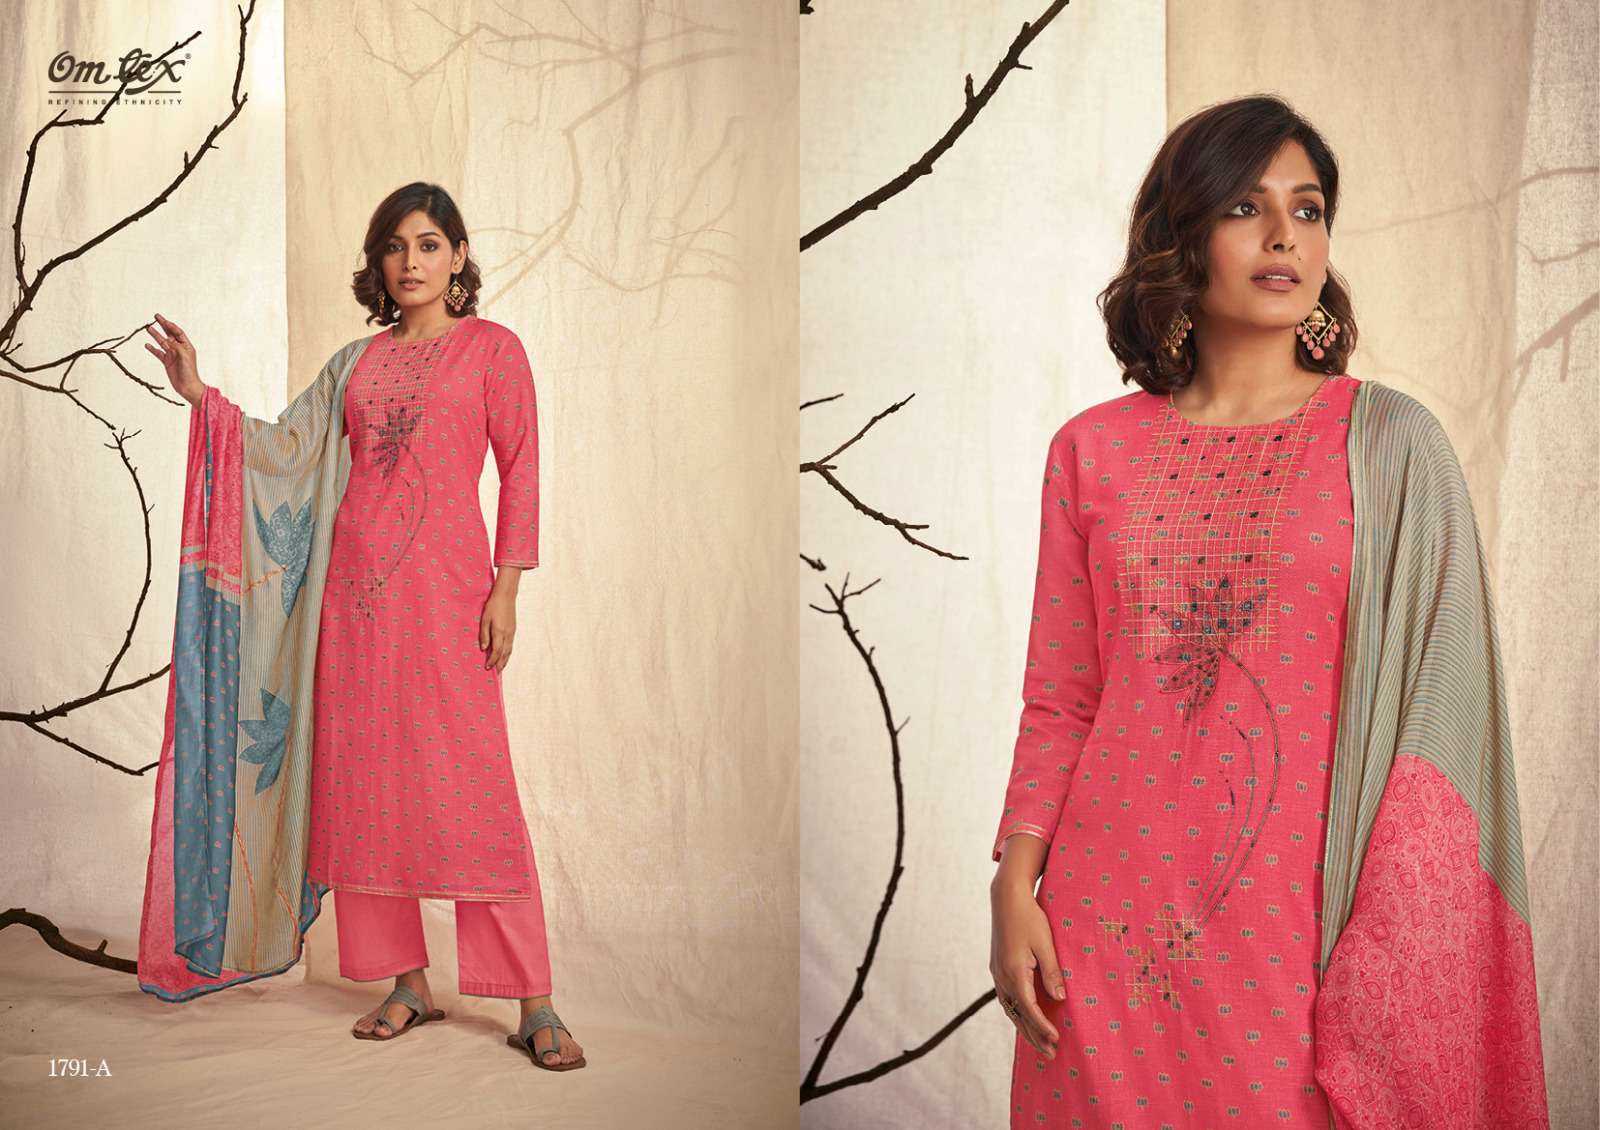 omtex nirvi 1791 colours linen cotton unstich fancy salwar kameez surat wholesale market